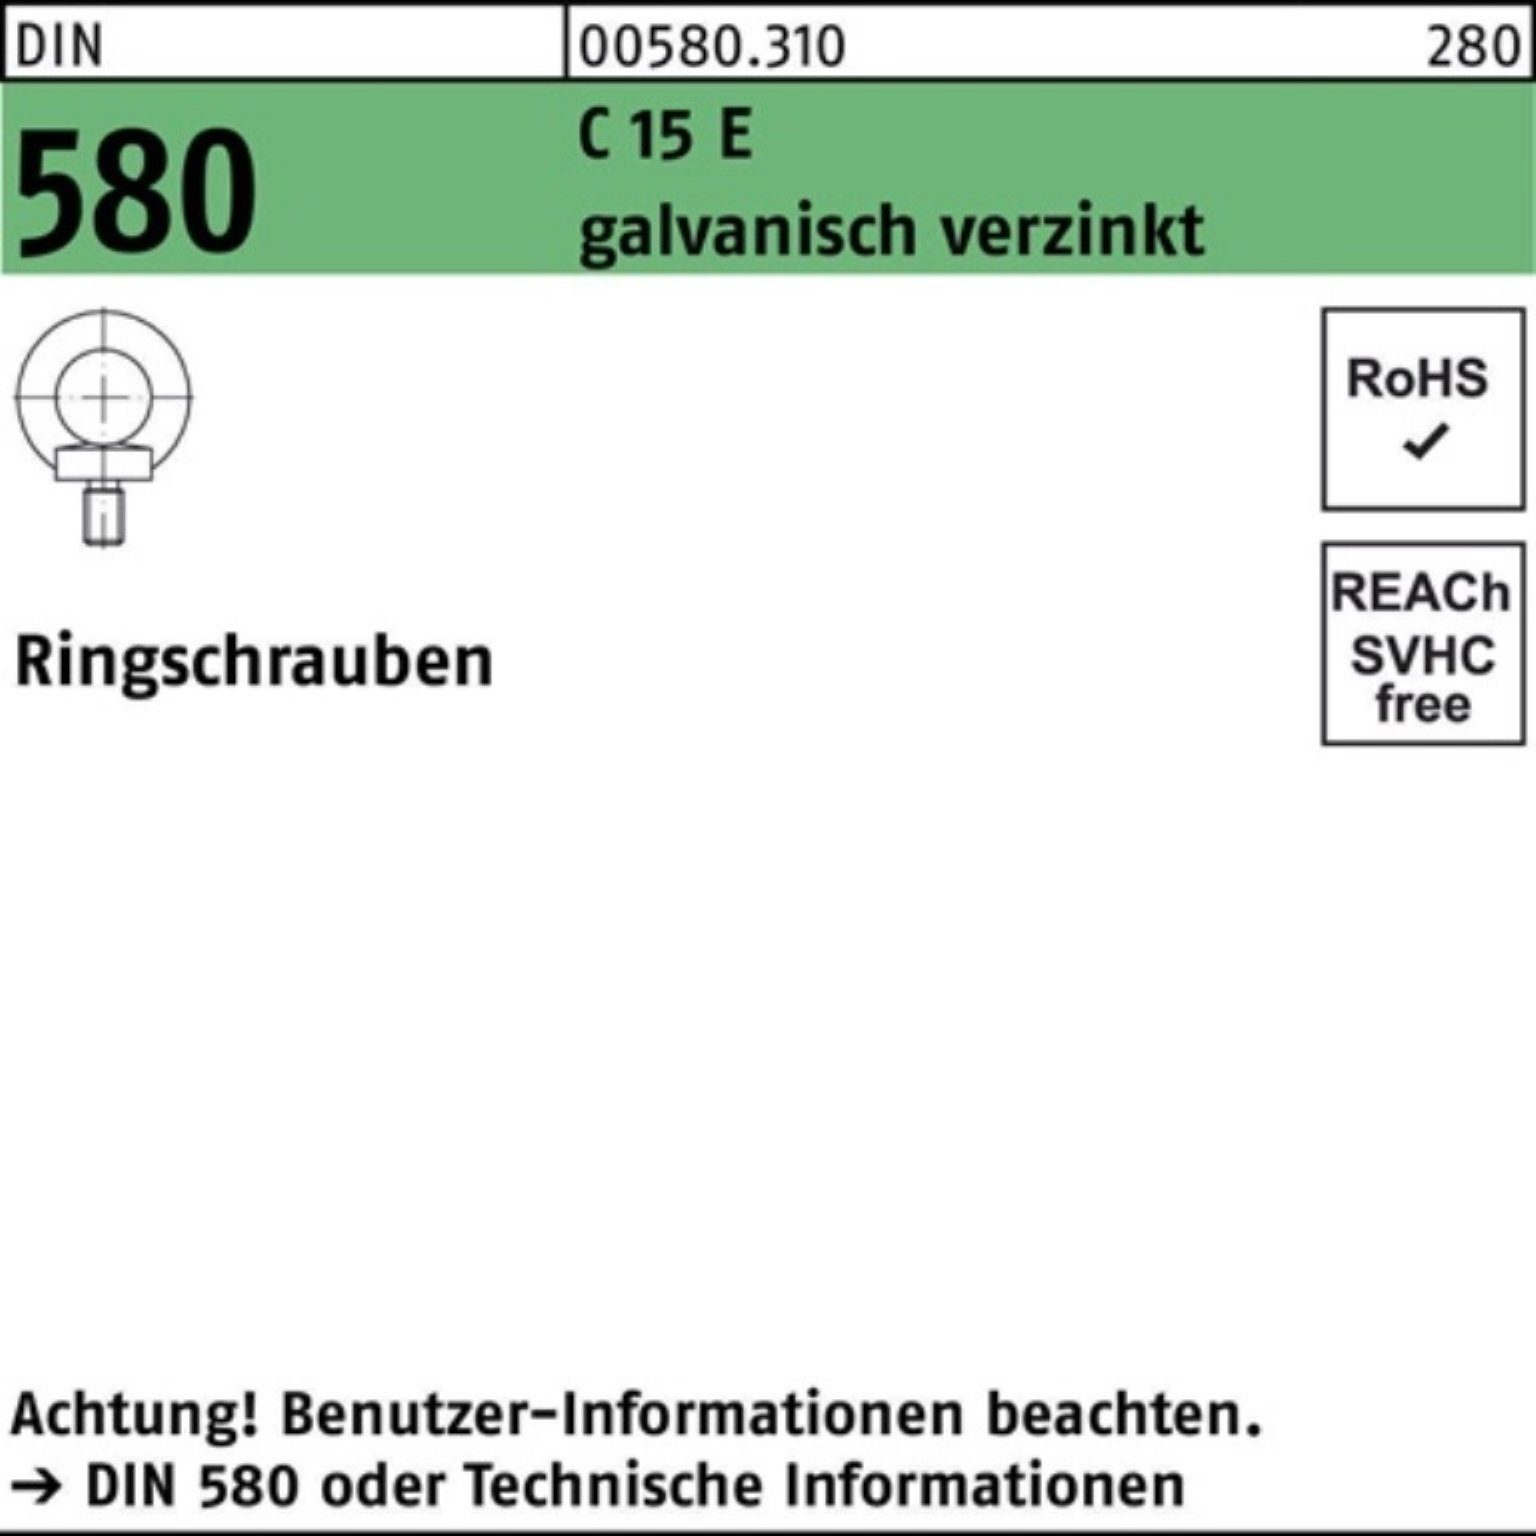 Reyher Schraube 100er Pack Ringschraube DIN 580 M27 C 15 E galv.verz. 1 Stück DIN 580